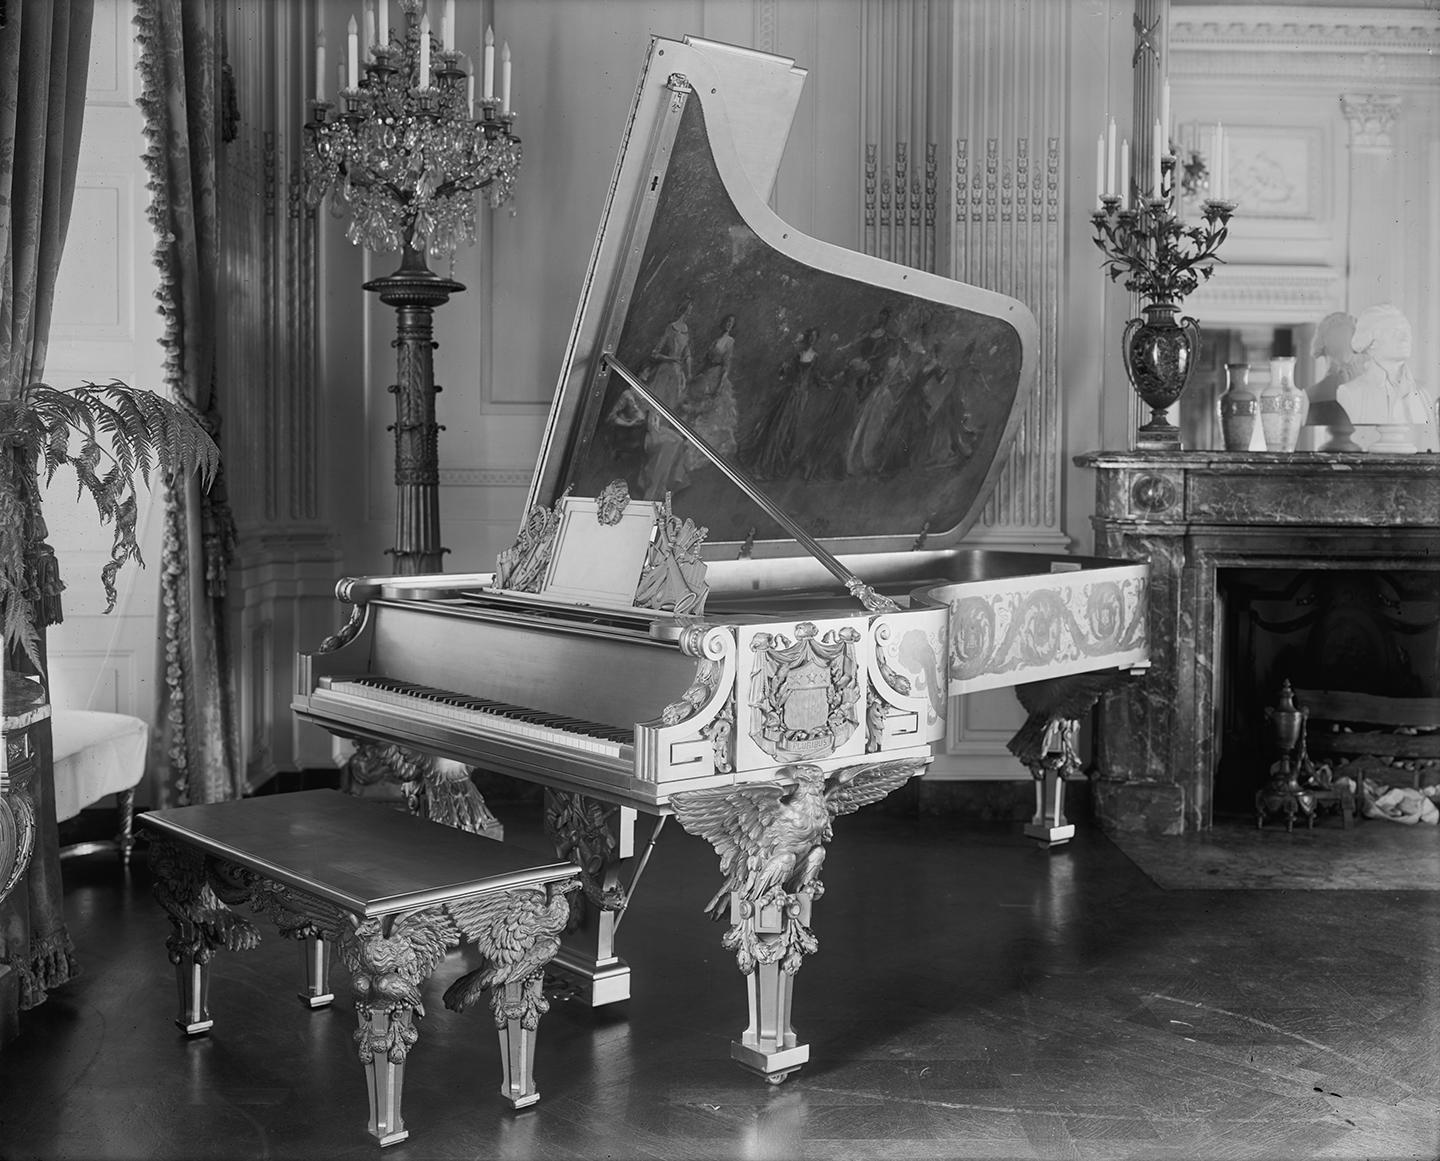 Cây đại dương cầm Steinway thứ 100,000, do kỹ sư Joseph và Richard Hunt thiết kế với bức tranh ngụ ngôn của họa sỹ Thomas W. Dewing, là cây đàn dương cầm nguyên bản của Tòa Bạch Ốc. Ảnh của nhiếp ảnh gia Harris & Ewing vào đầu thế kỷ 20. Thư viện Quốc hội. (Ảnh: Tư liệu công cộng)